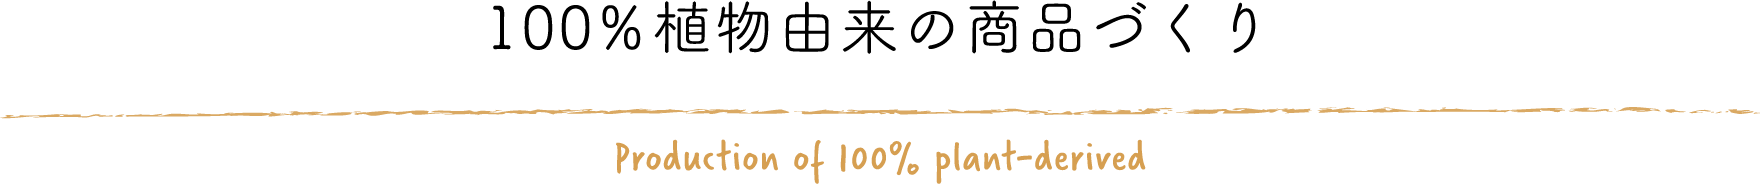 100%植物由来の商品づくり Production of 100% plant-derived